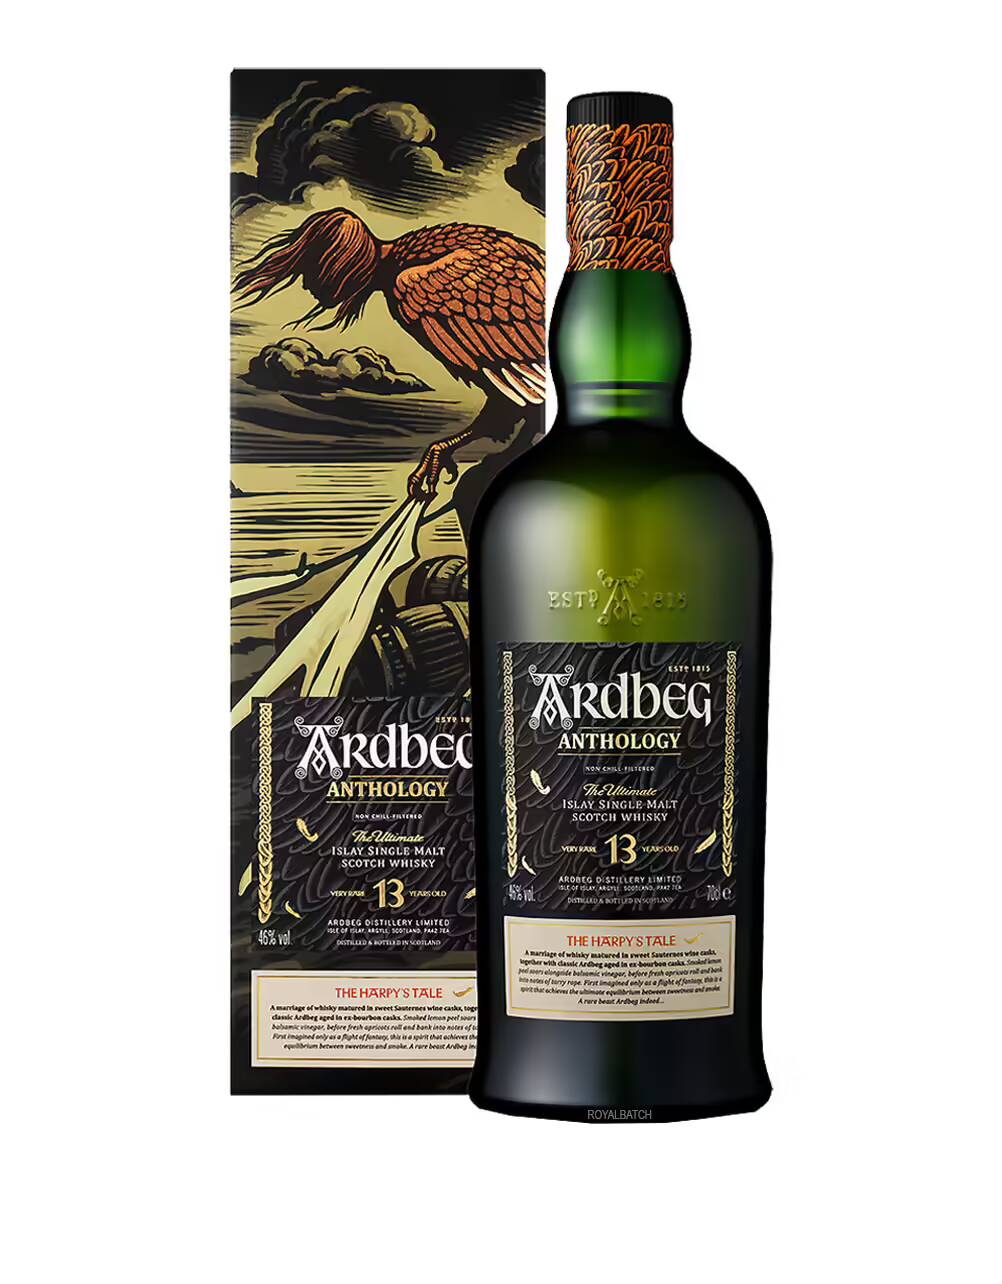 Ardbeg Anthology 13 Year Old Single Malt Scotch Whisky